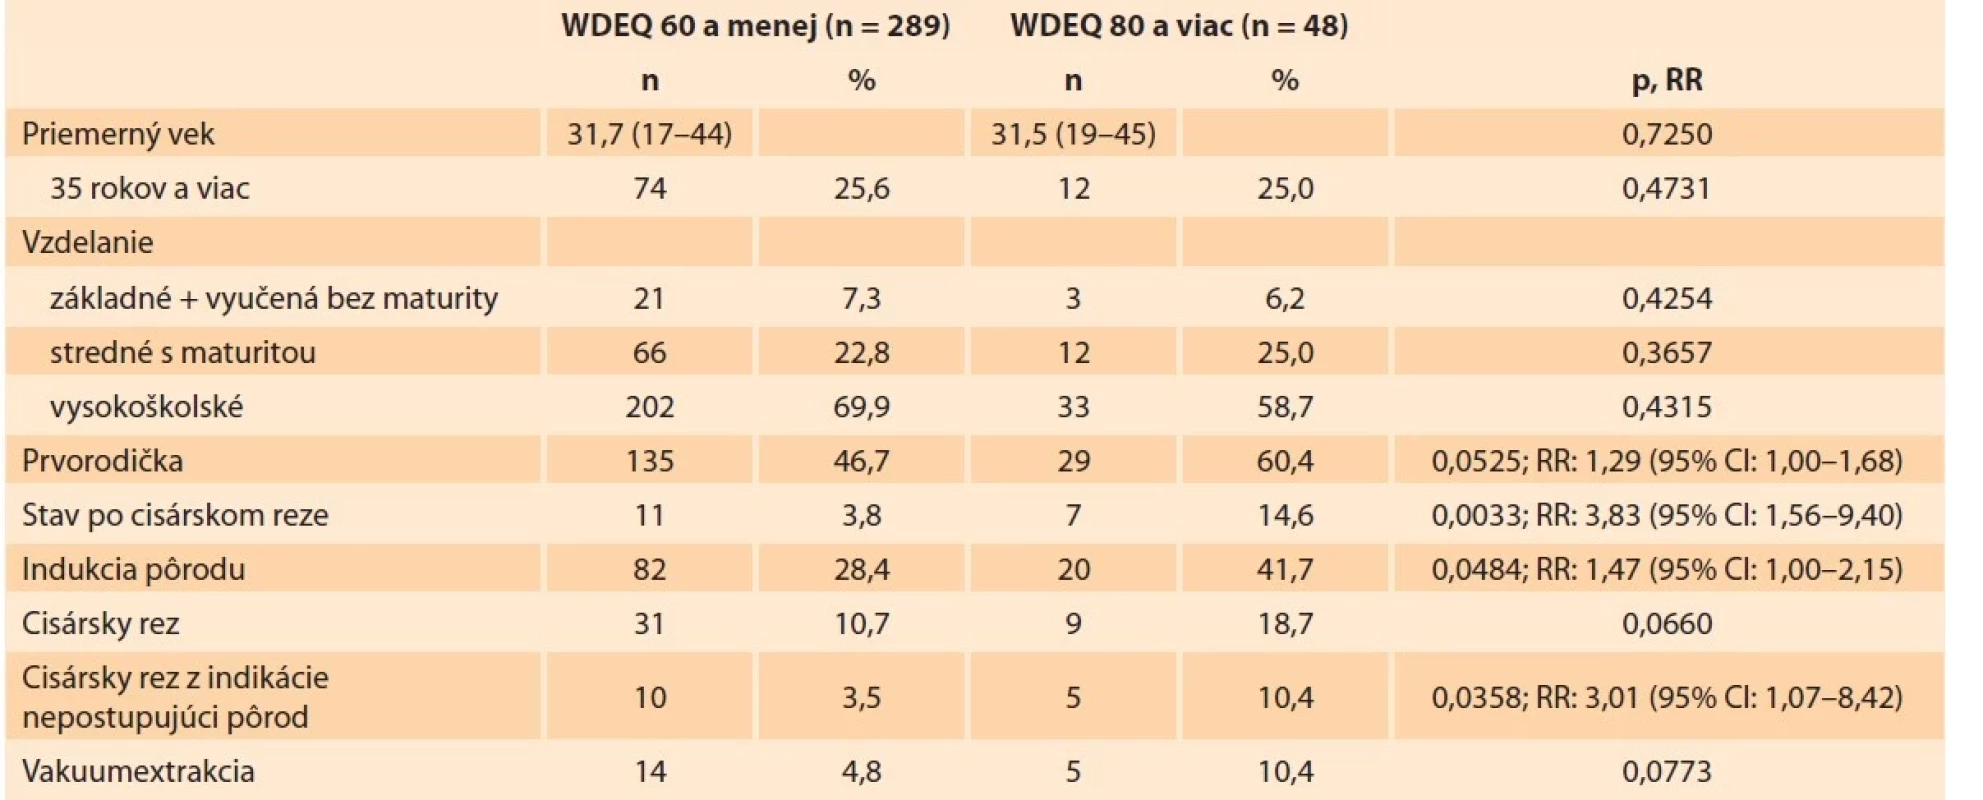 Porovnanie skupiny žien s nízkou hodnotou S-WDEQ (60 a menej) so skupinou s hodnotou nad pásmom vysokých
obáv (80 a viac).<br>
Tab. 2. Comparison of the group of women with a low S-WDEQ score (60 and below) and the group with a score in a range
of high concerns (80 and above).